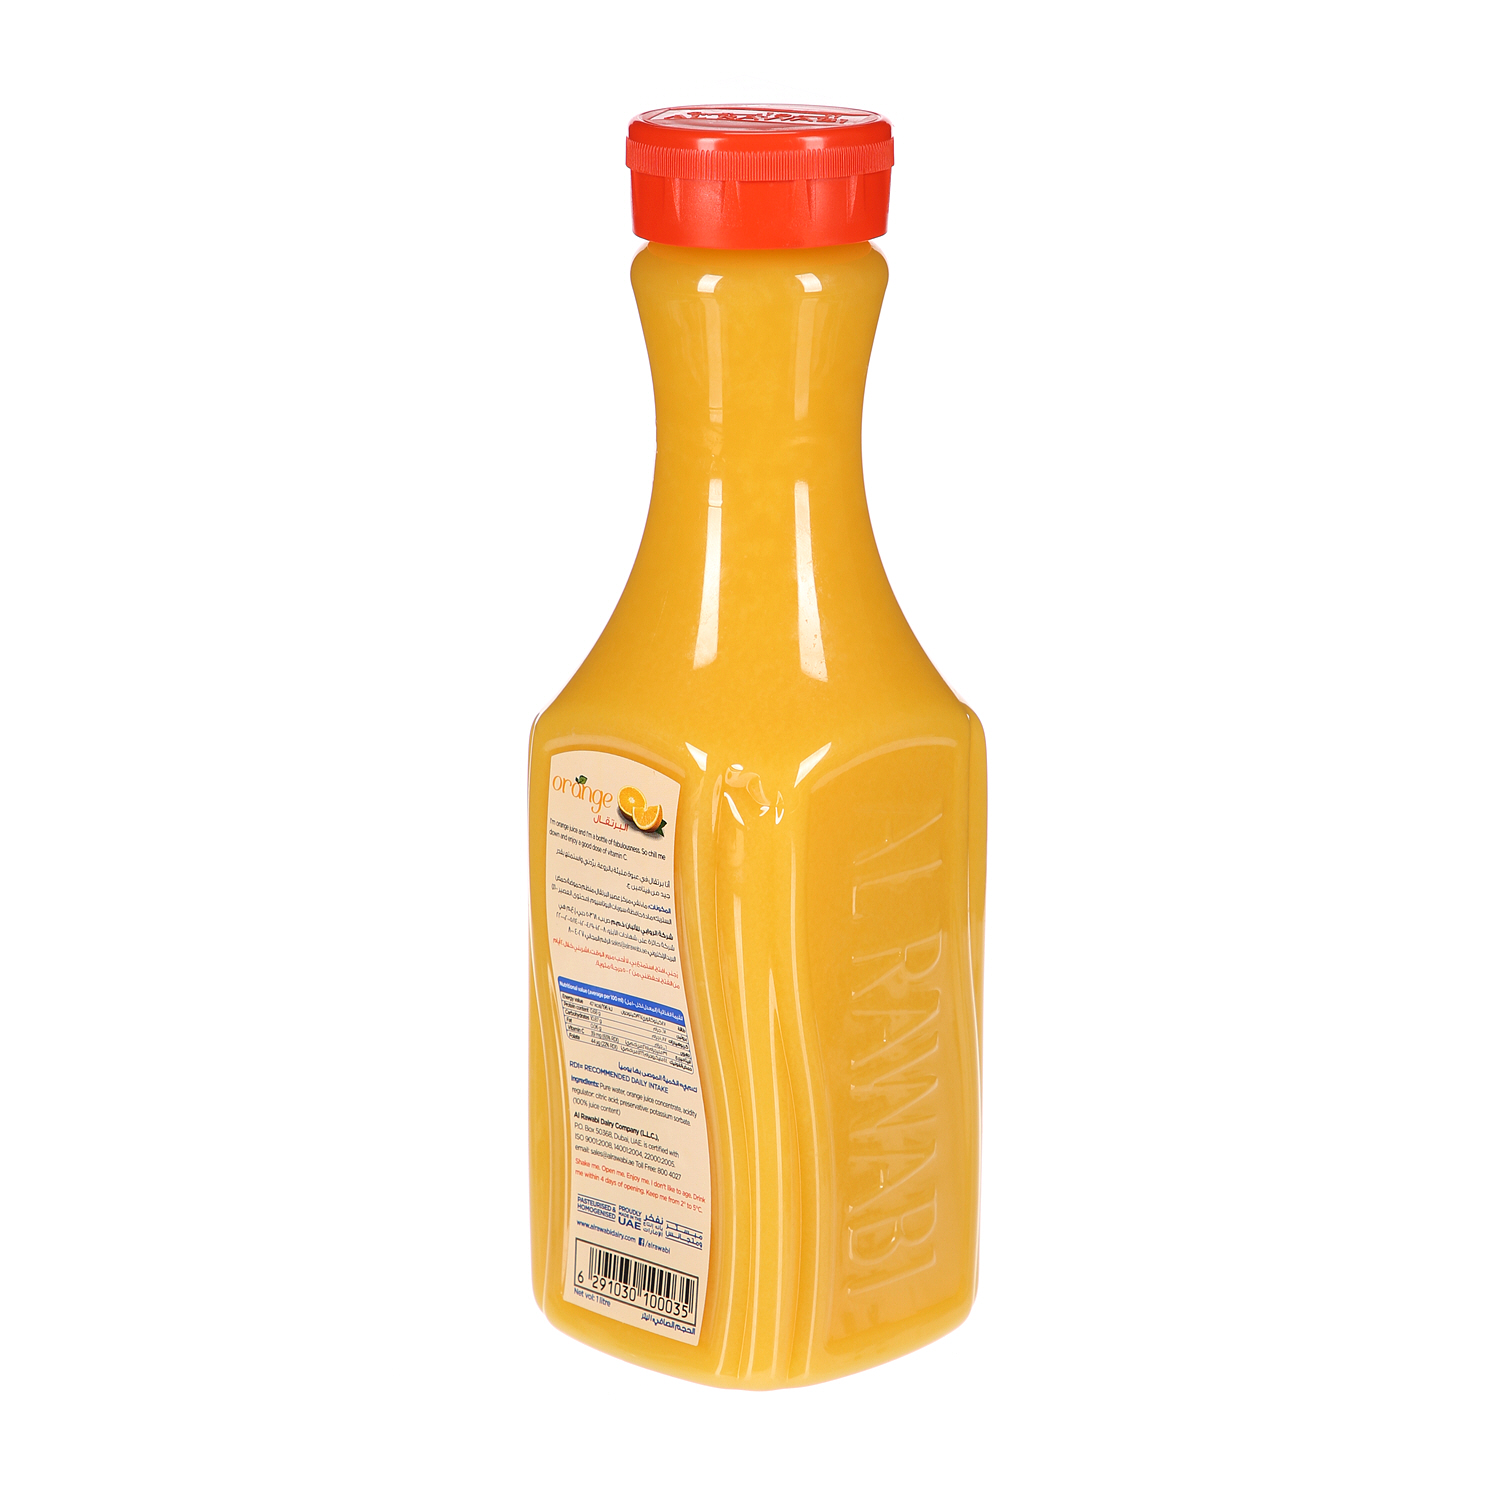 الروابي عصير البرتقال 1 لتر